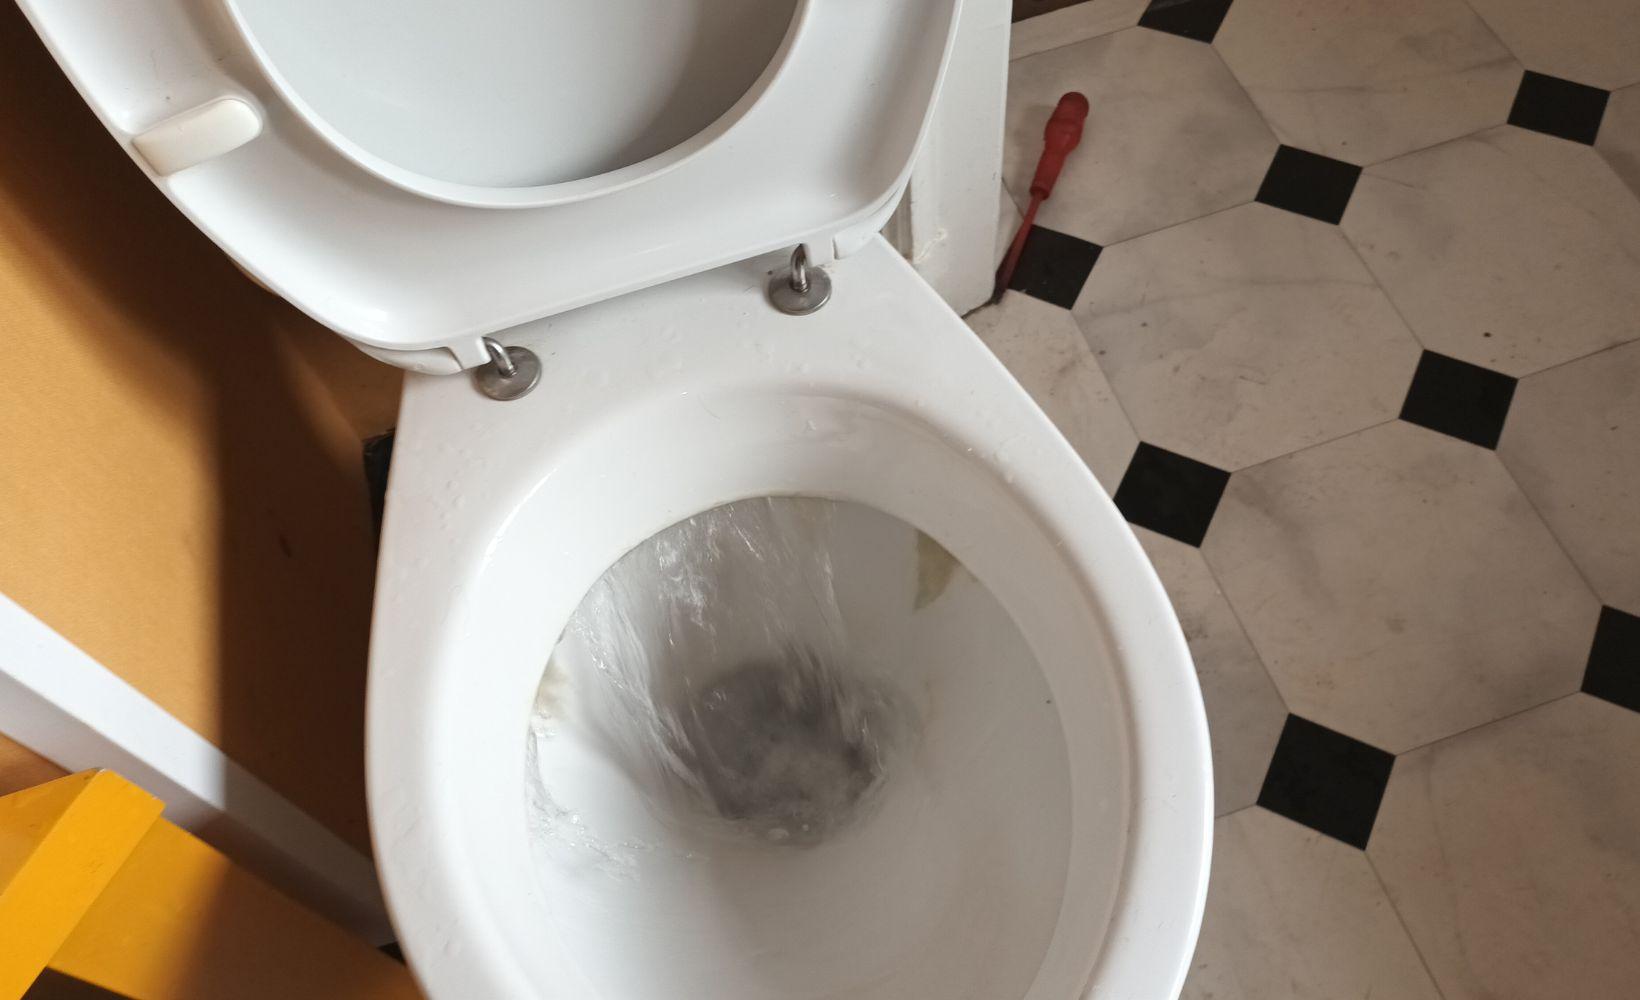 Plombier vdk pour le debouchage toilette a renaix 4